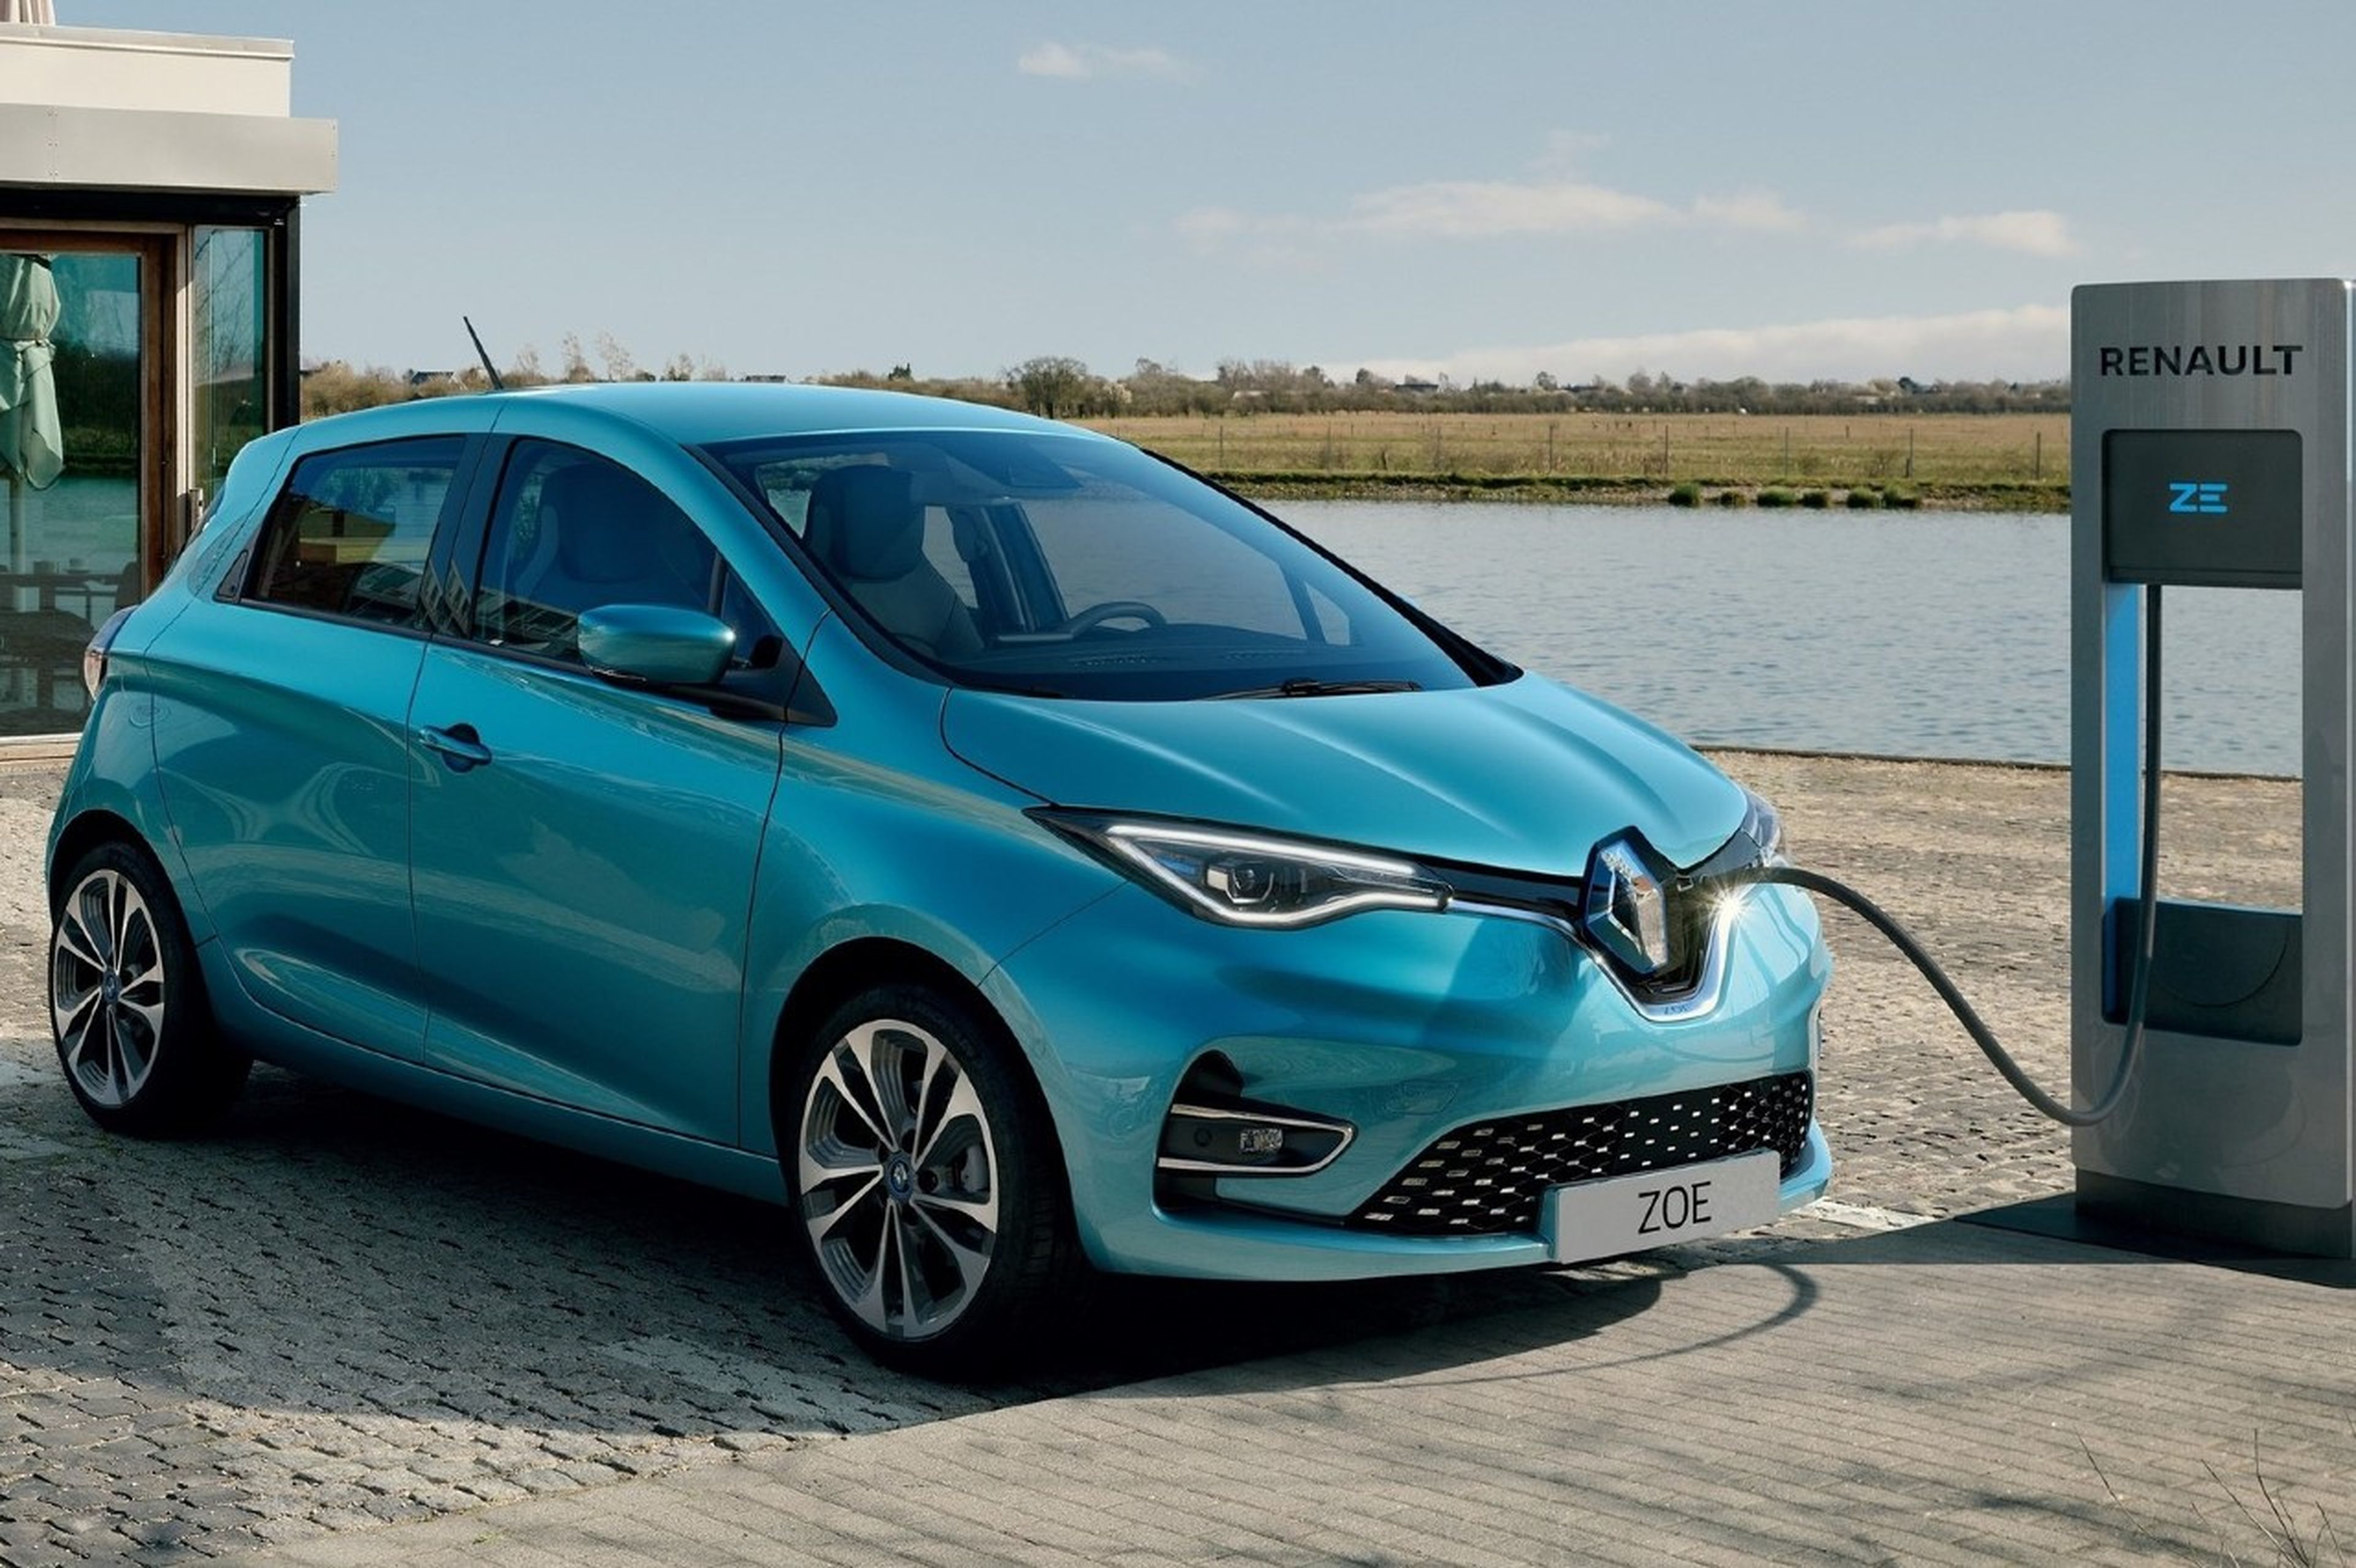 El Renault Zoe es uno de los coches eléctricos más vendidos del mercado